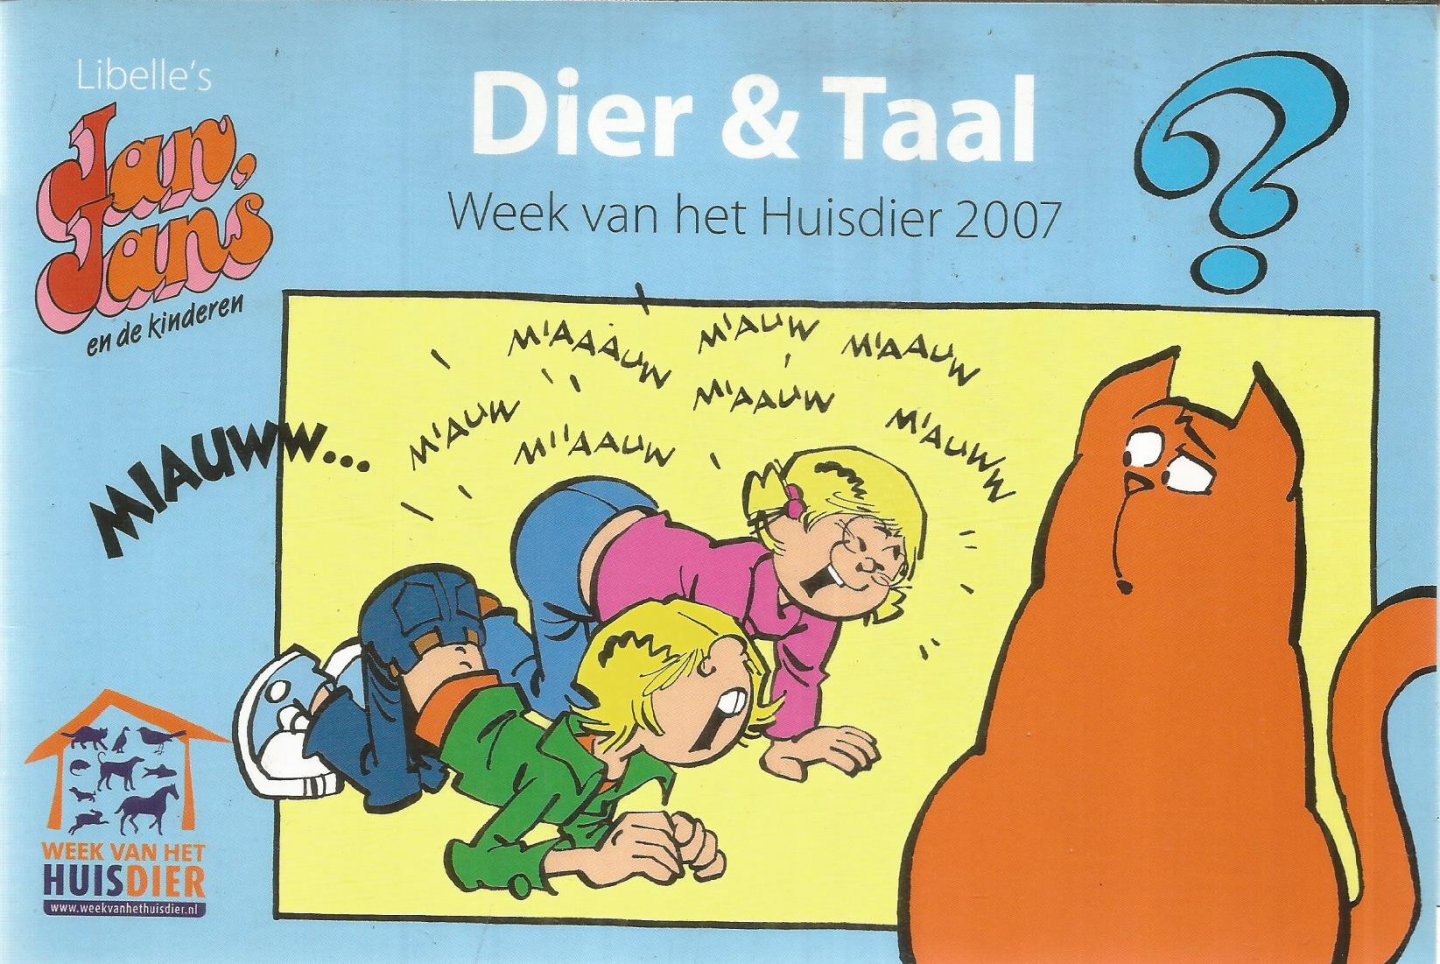 redactie - Dier & Taal - Jan, Jans & de kinderen - week van het huisdier 2007